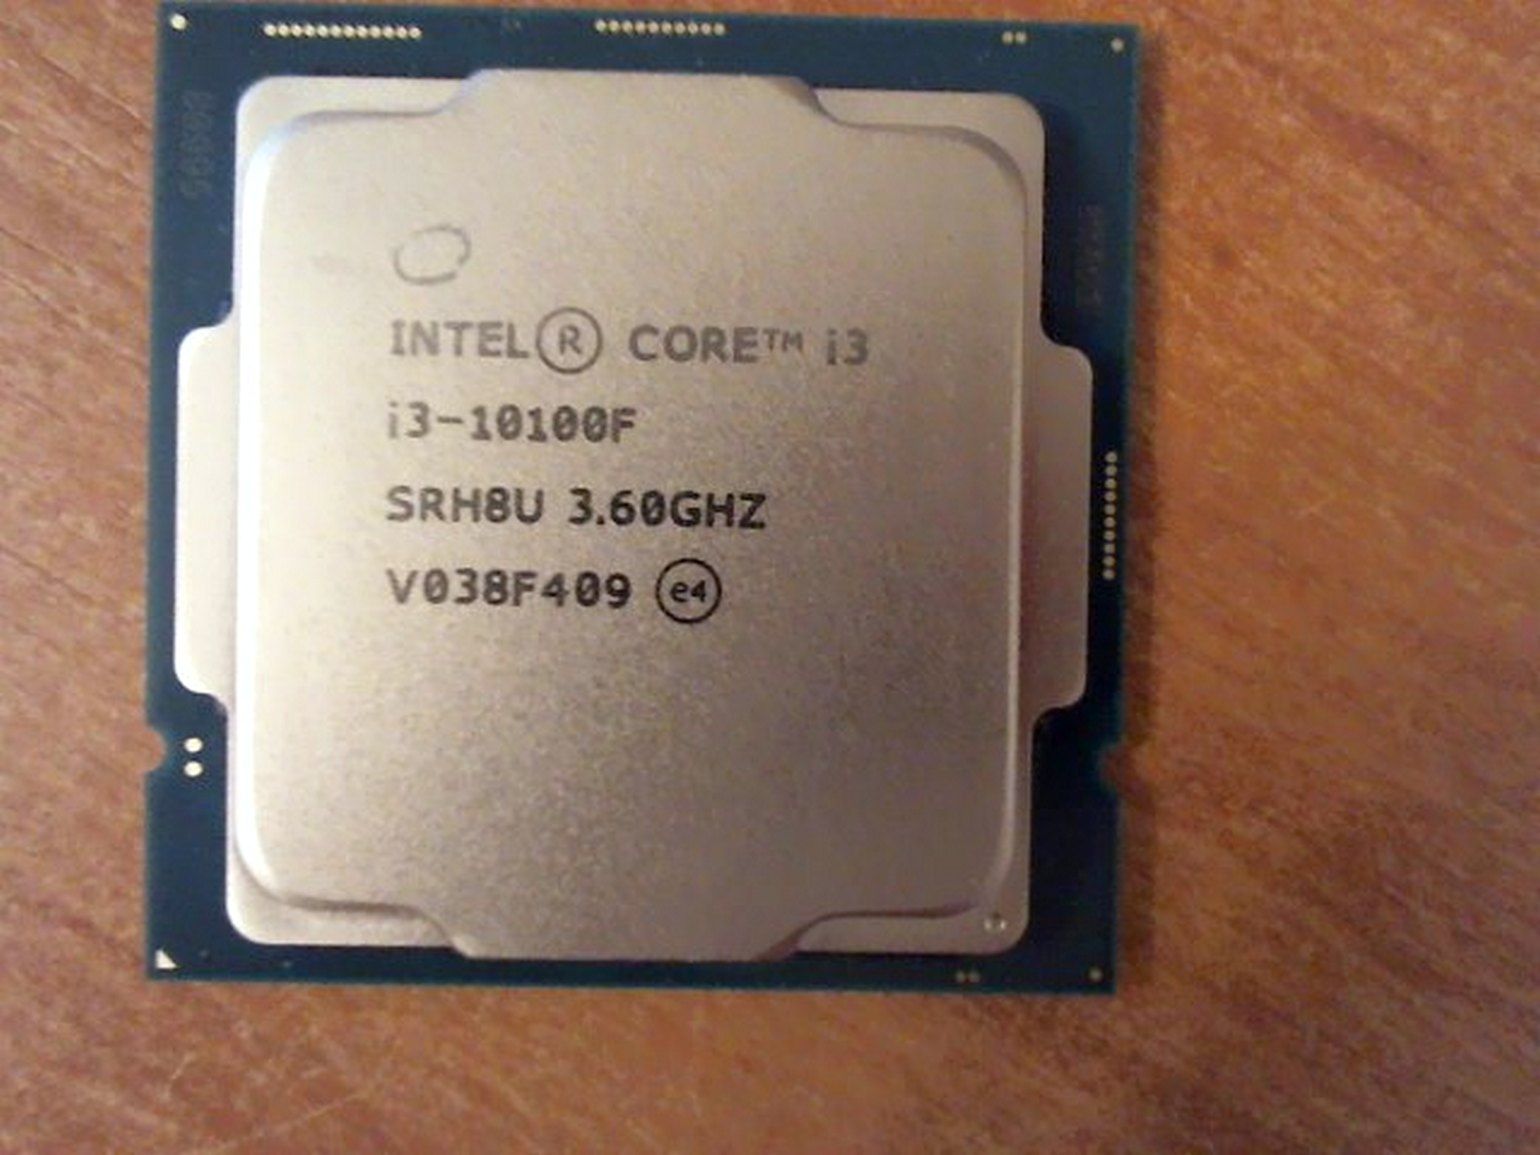 Интел 10100f. Intel Core i3-10100f. CPU Intel Core i3-10100f. Процессор Intel Core i3-10100f lga1200, 4 x 3600 МГЦ, OEM. Процессор Intel Core i3 10100f, LGA 1200, OEM.